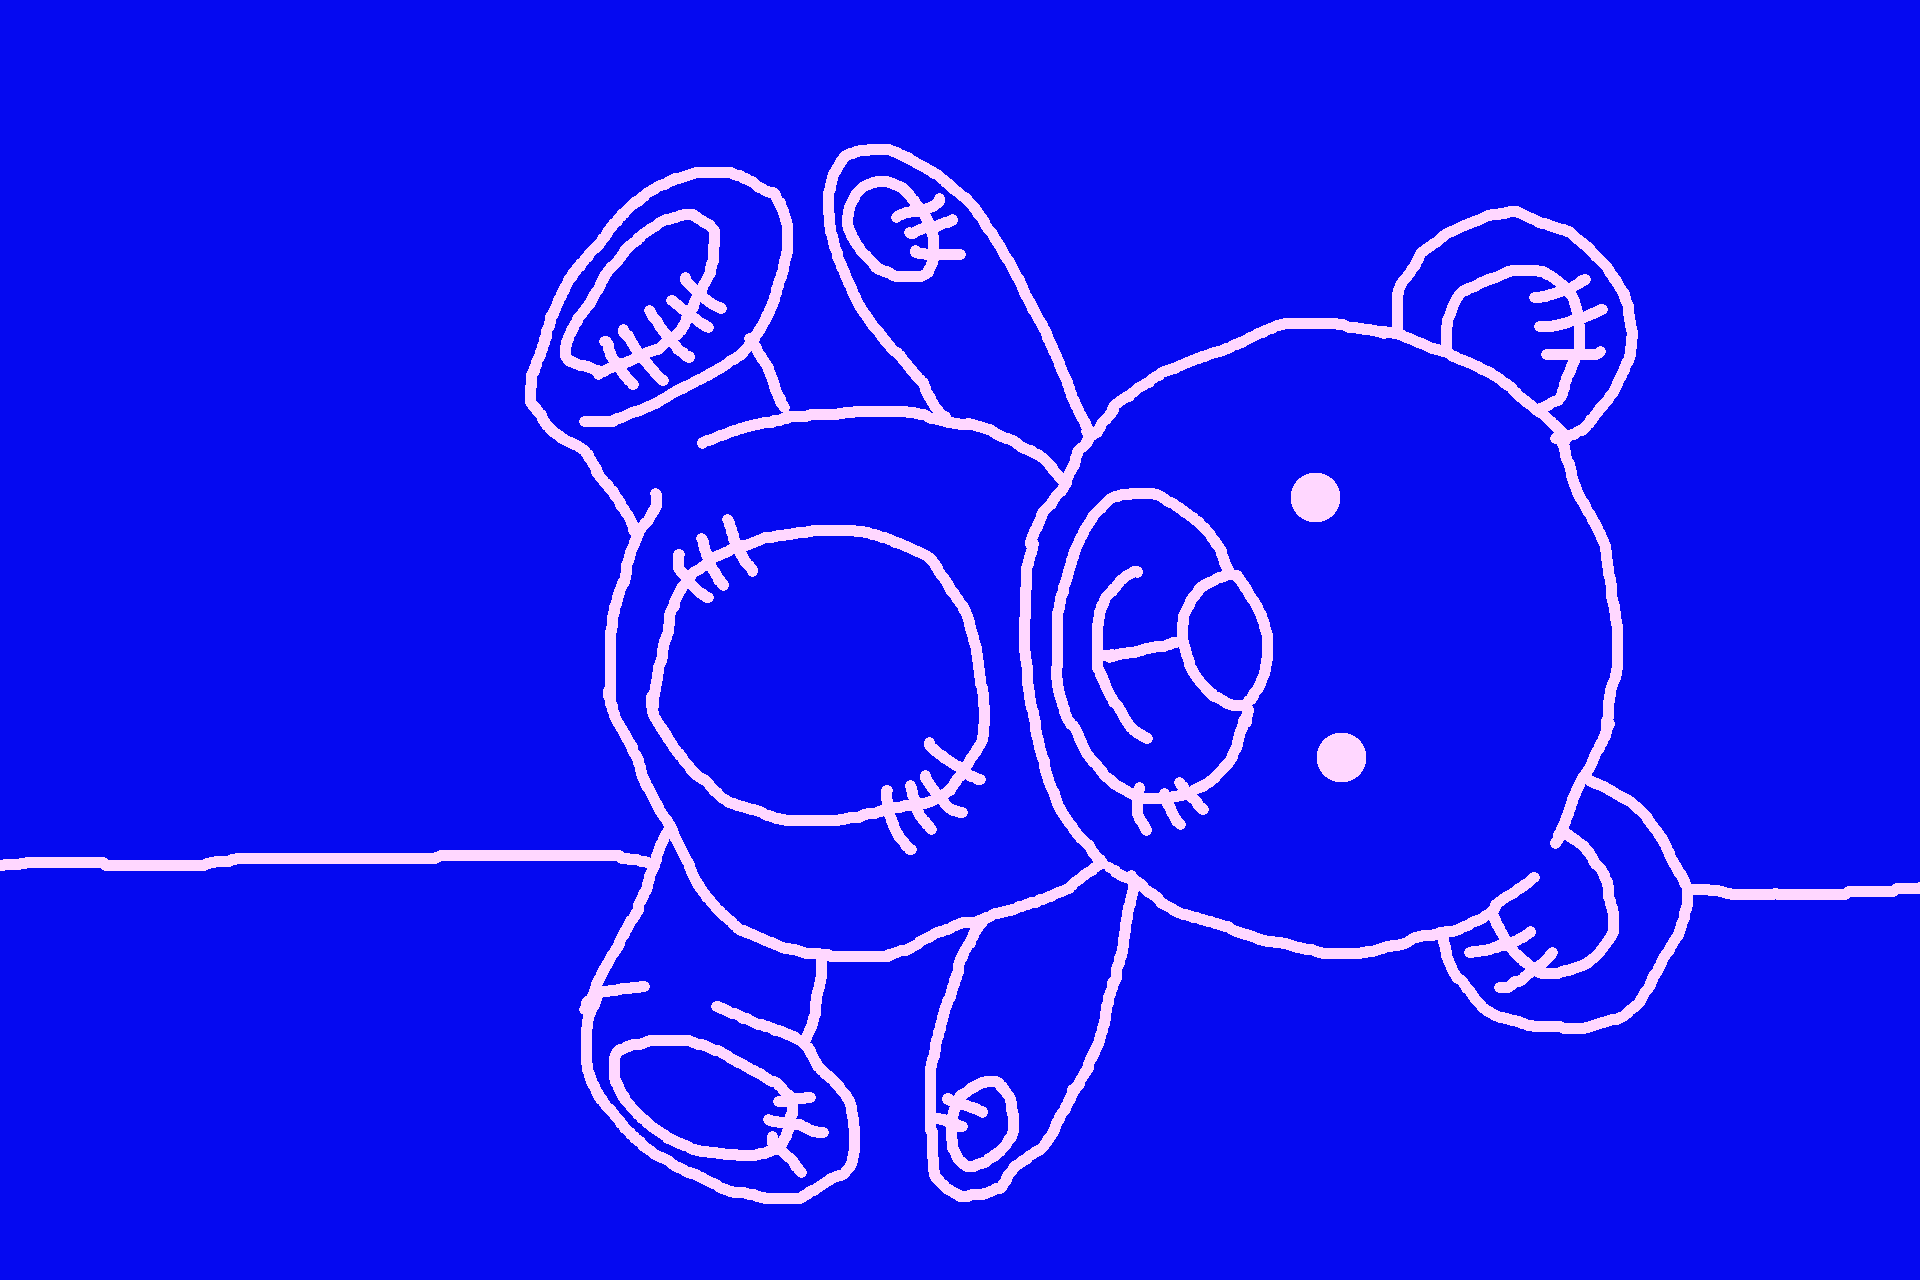 sur un fond bleu, dessin naïf d'un ours en peluche 